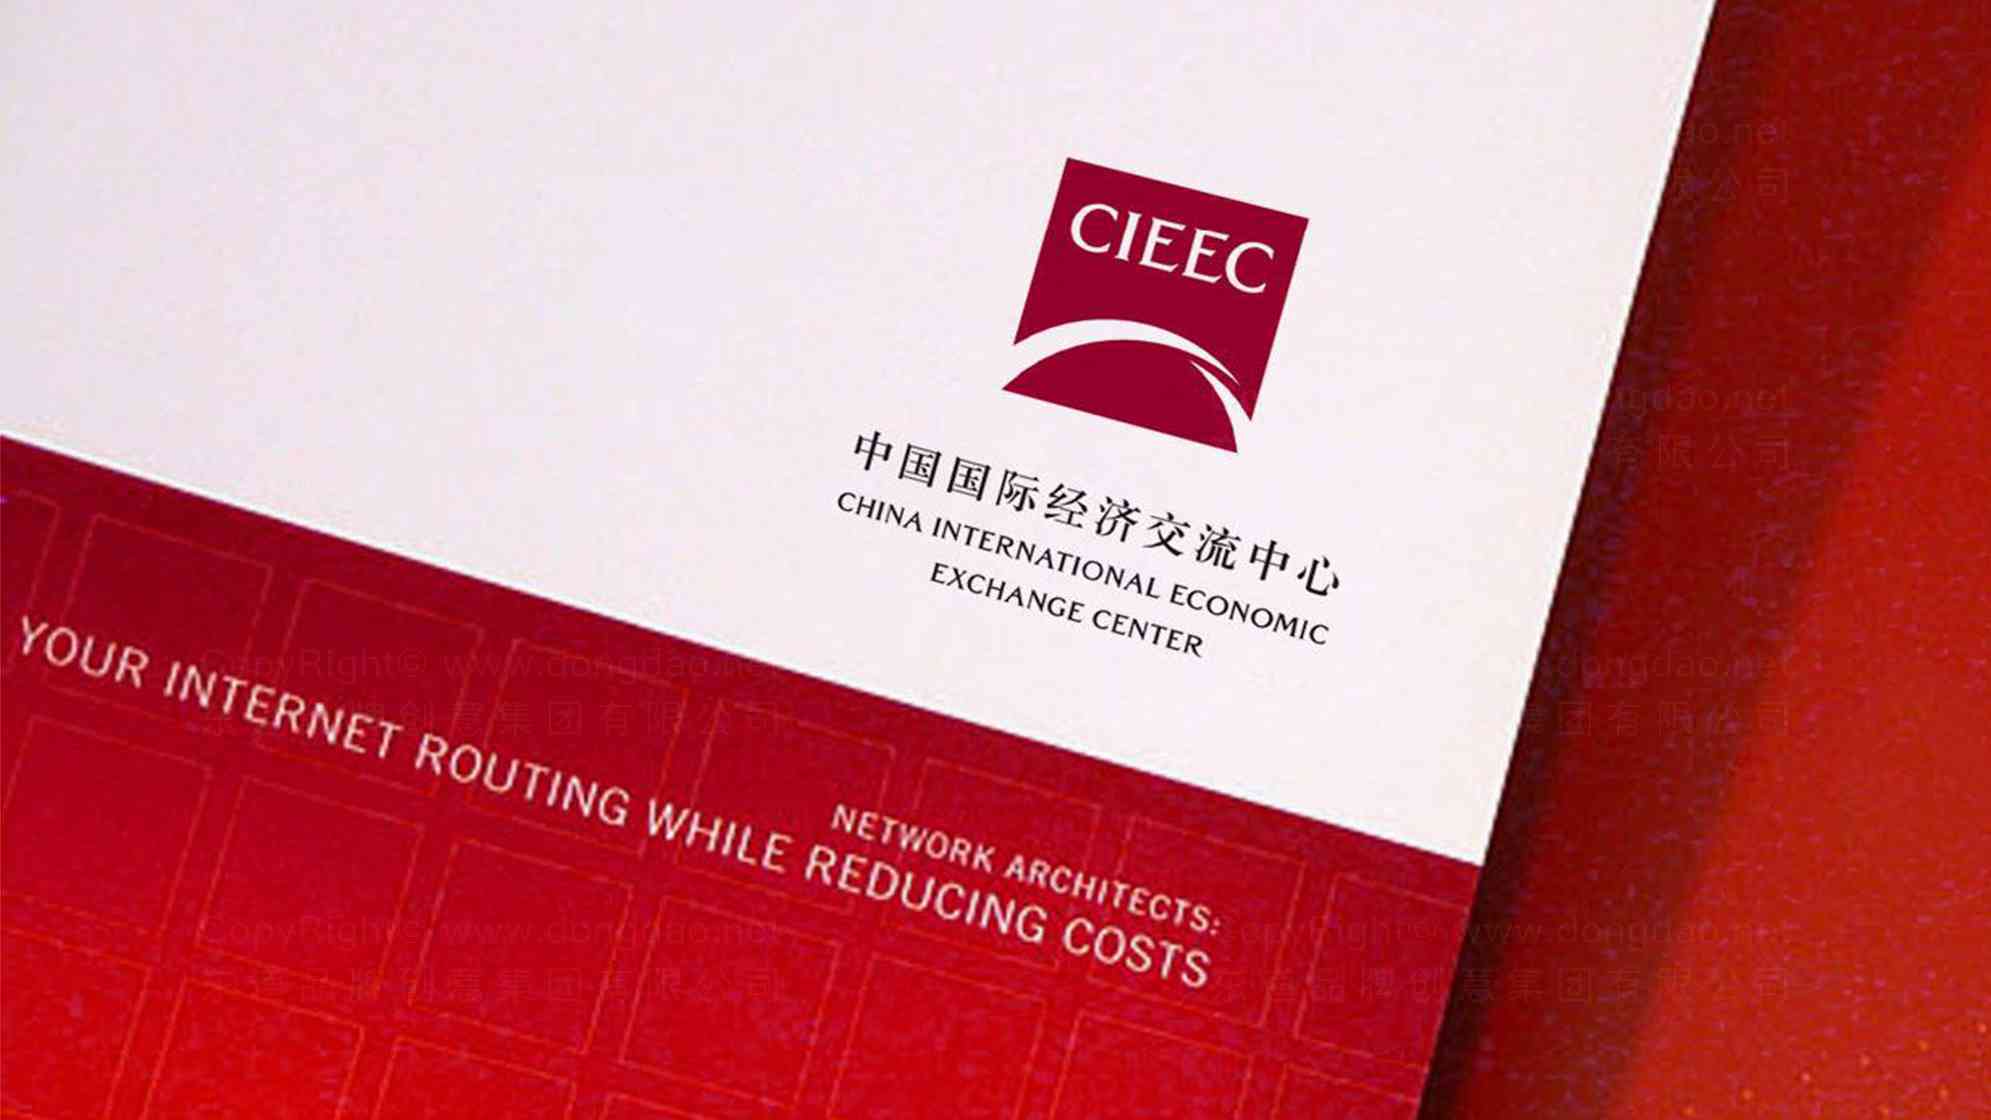 中国国际经济交流中心logo设计图片素材